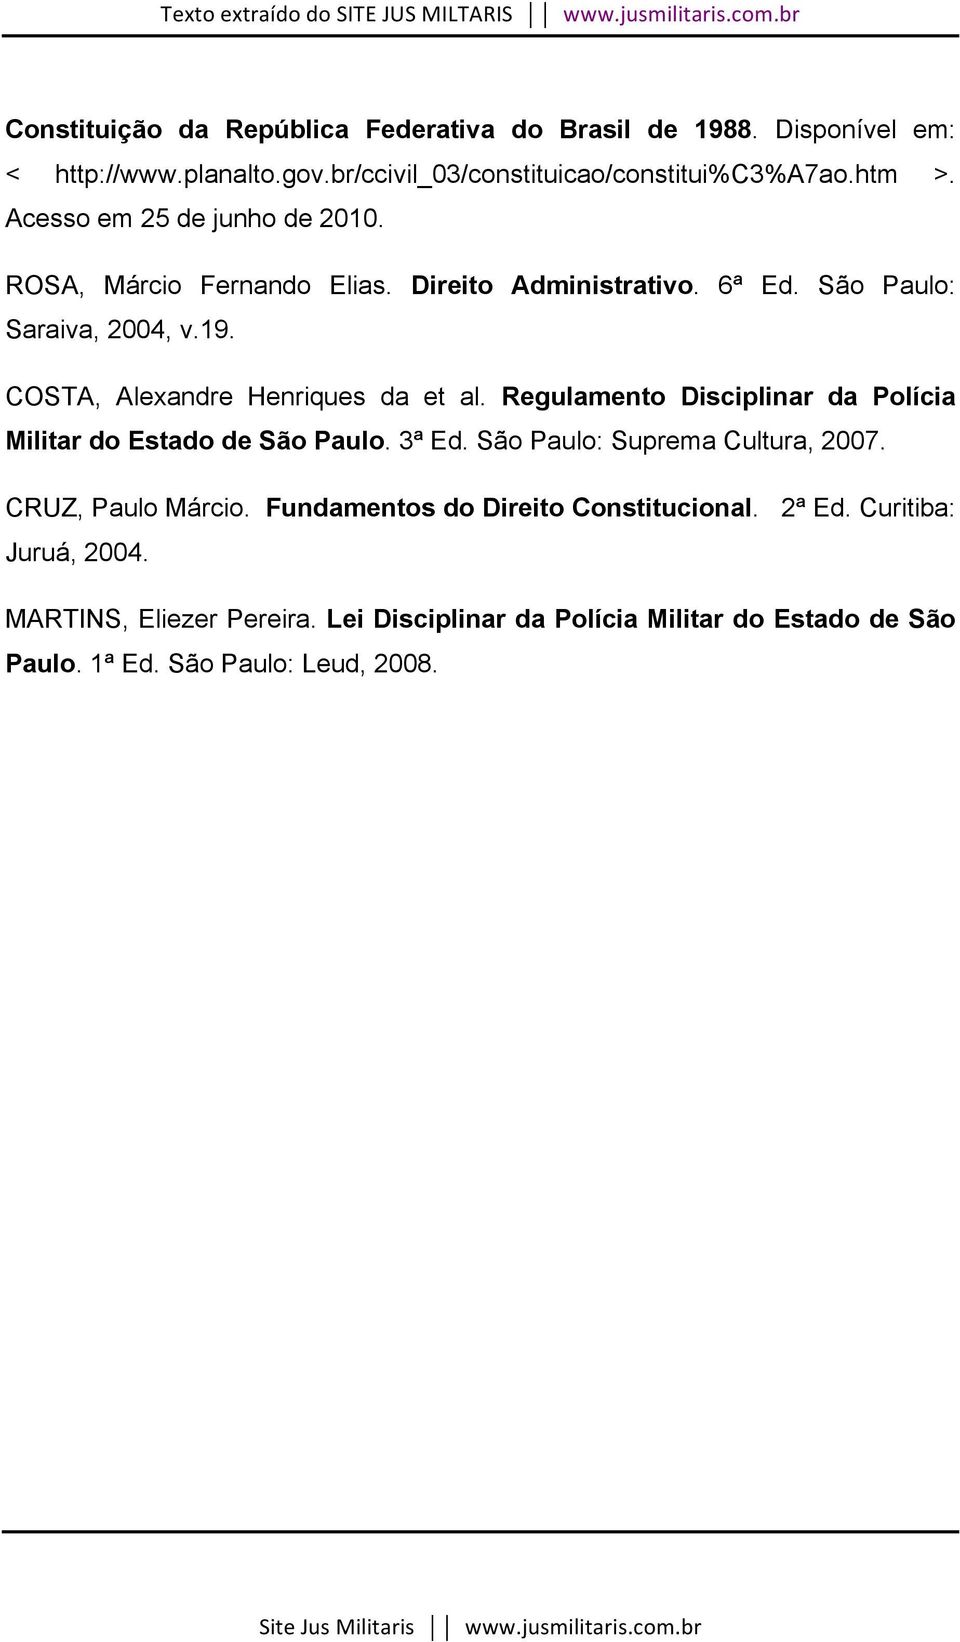 COSTA, Alexandre Henriques da et al. Regulamento Disciplinar da Polícia Militar do Estado de São Paulo. 3ª Ed. São Paulo: Suprema Cultura, 2007.